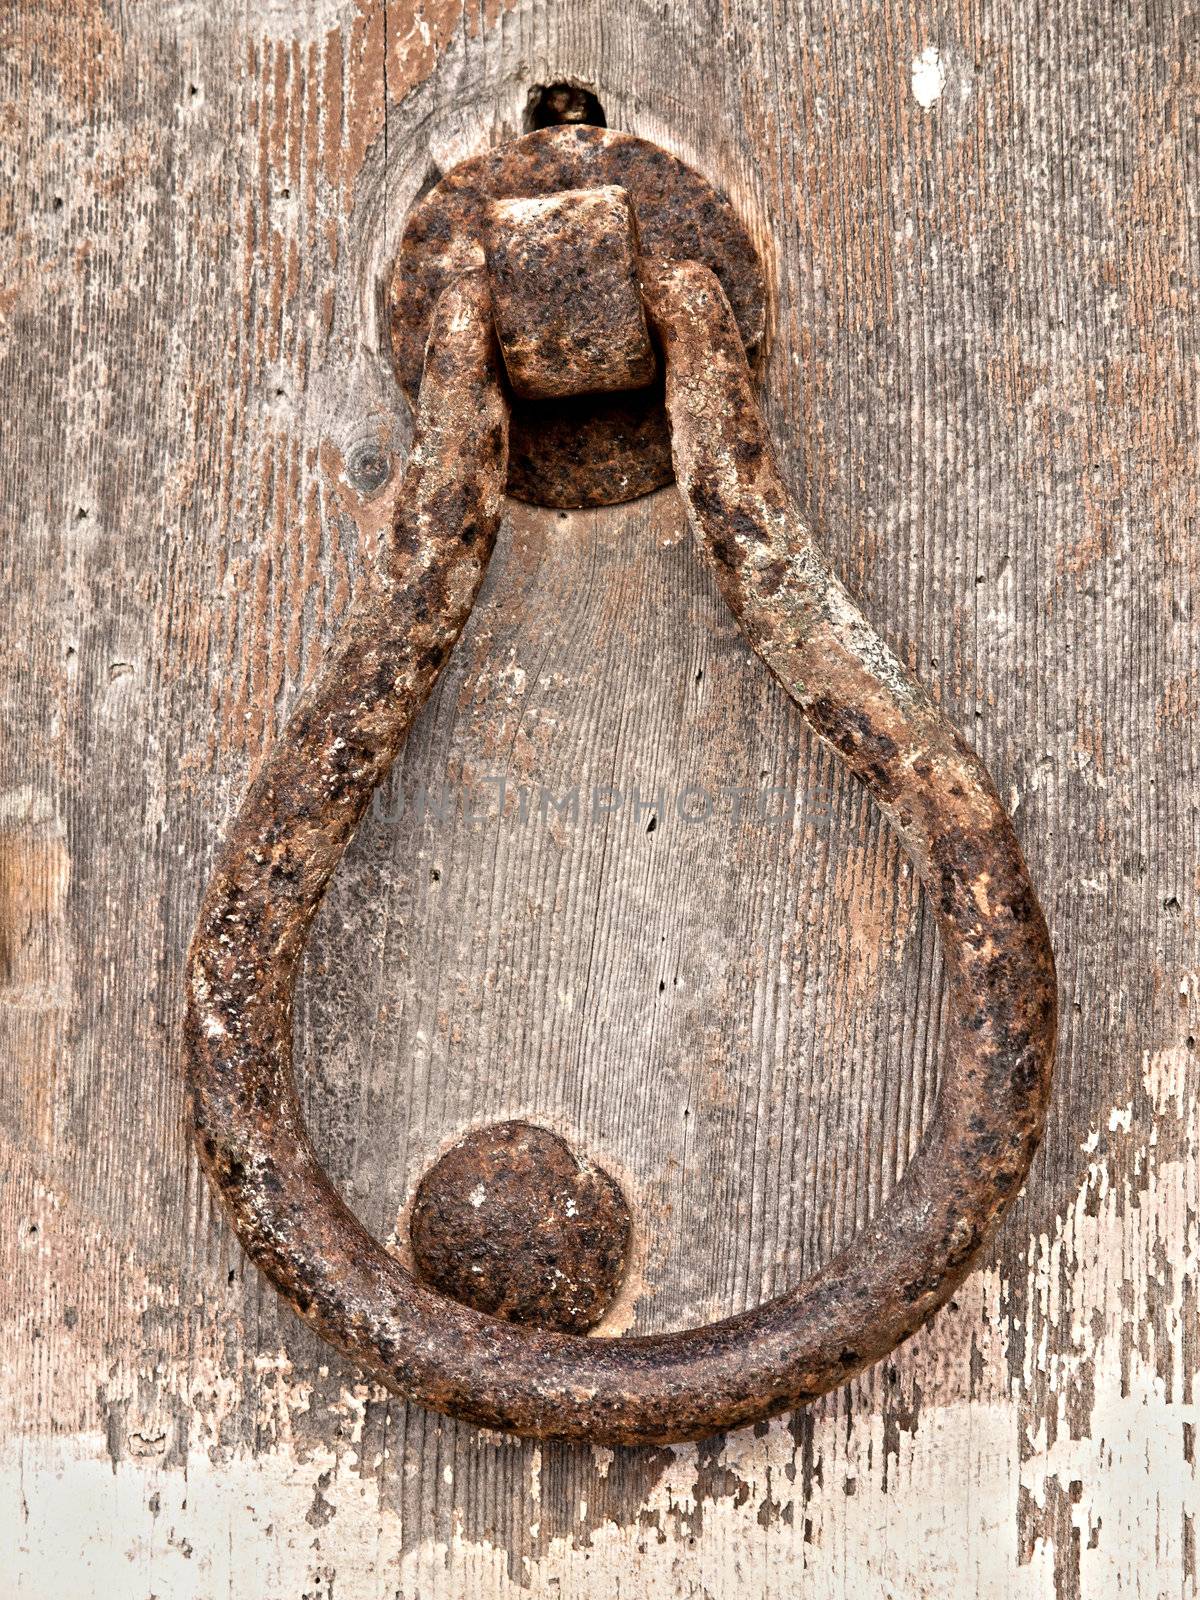 Rusty Knocks by PhotoWorks